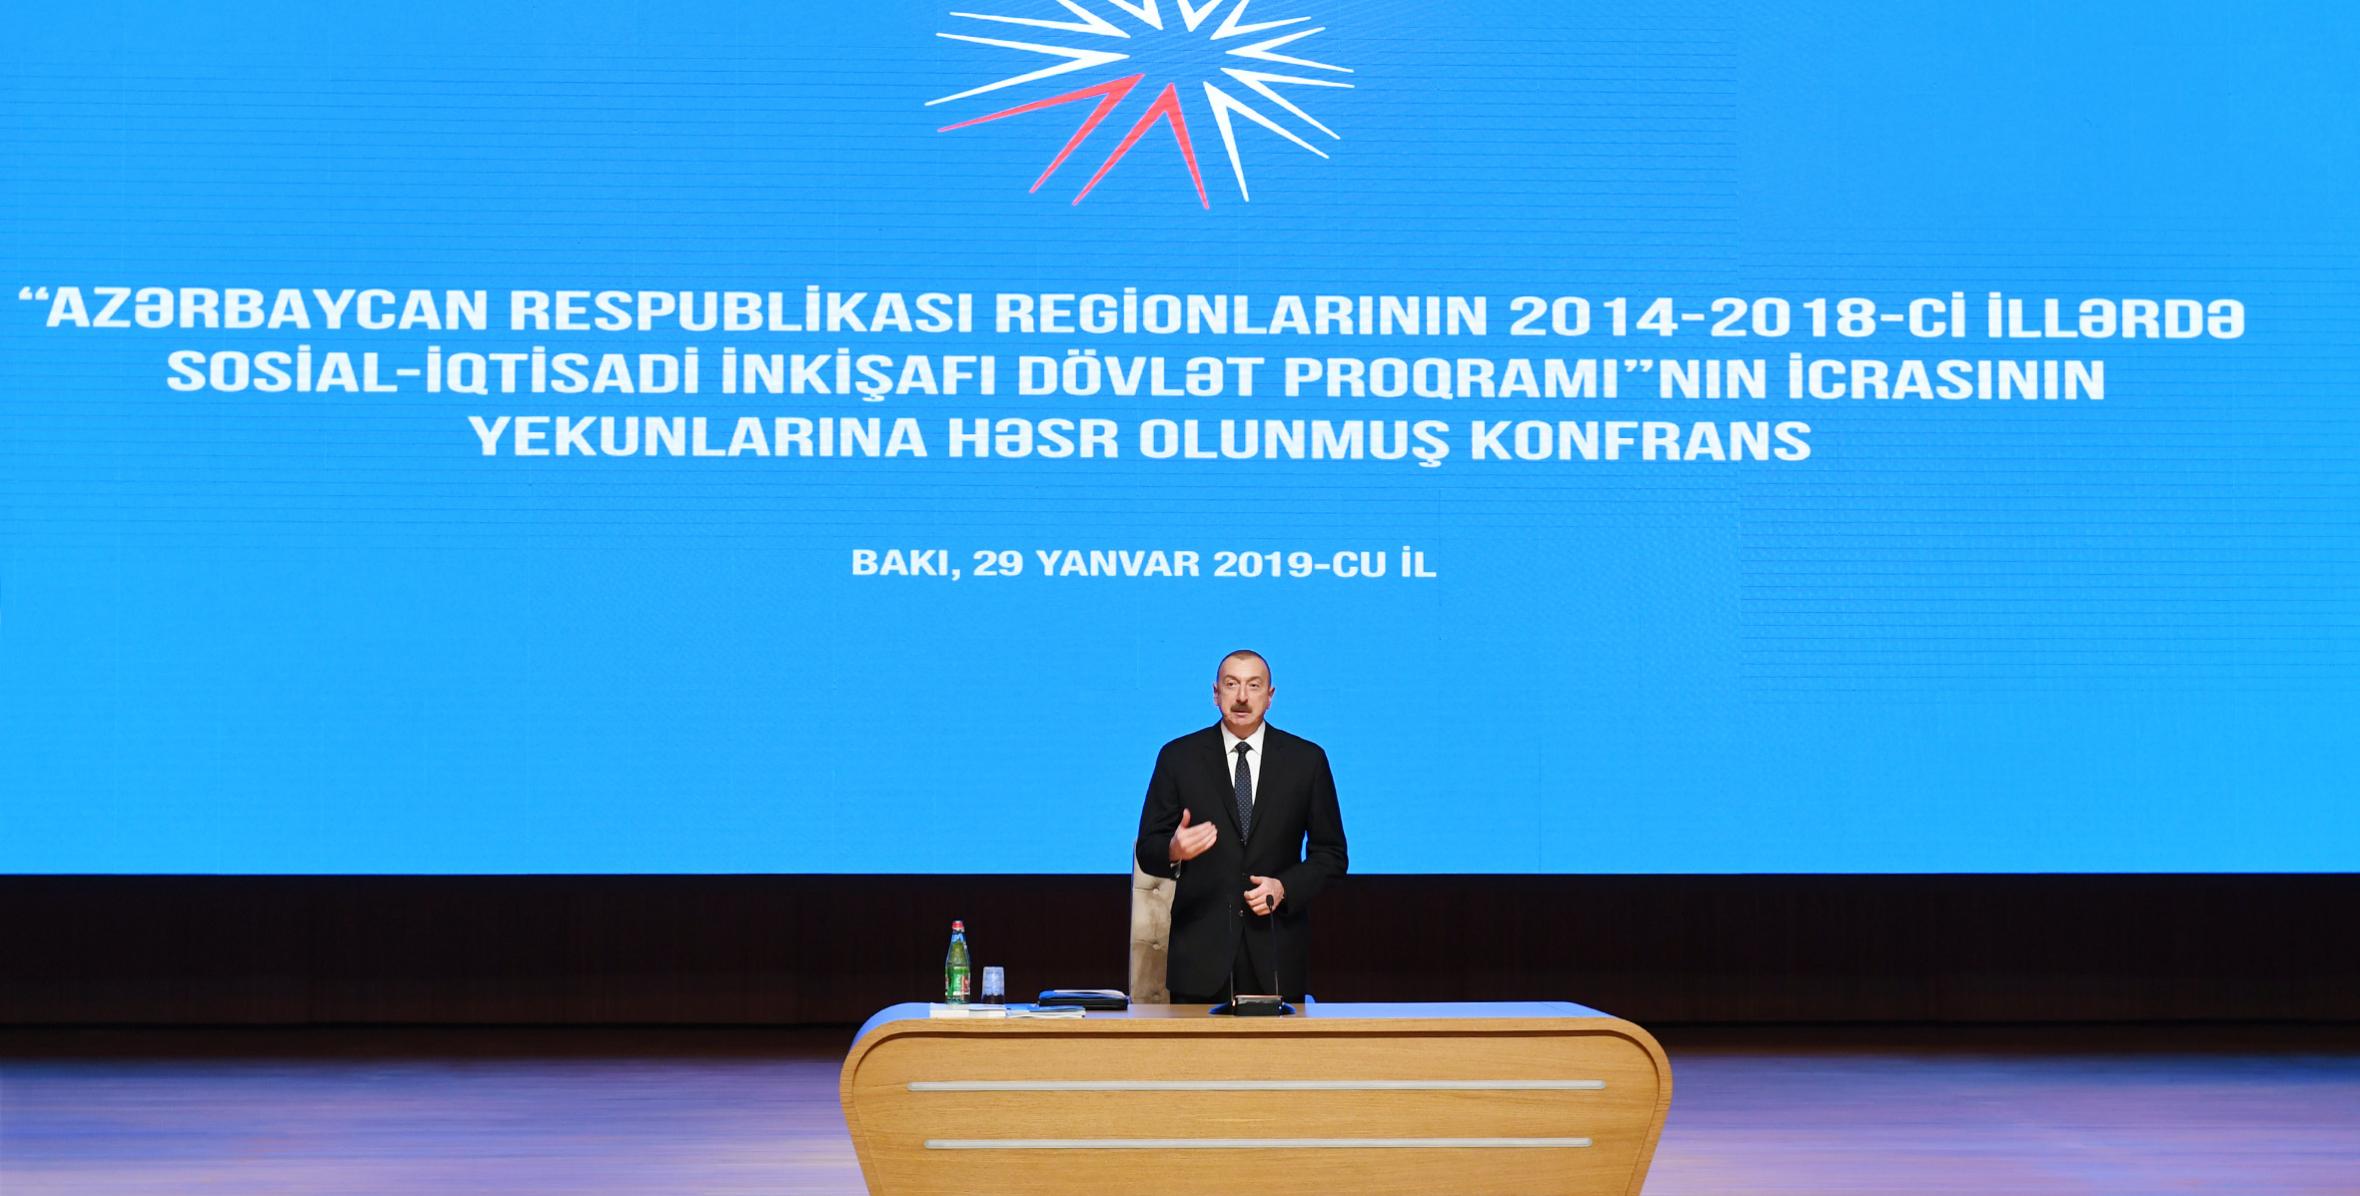 Вступительная речь Ильхама Алиева на конференции, посвященной итогам четвертого года реализации Государственной программы социально-экономического развития регионов в 2014-2018 годах